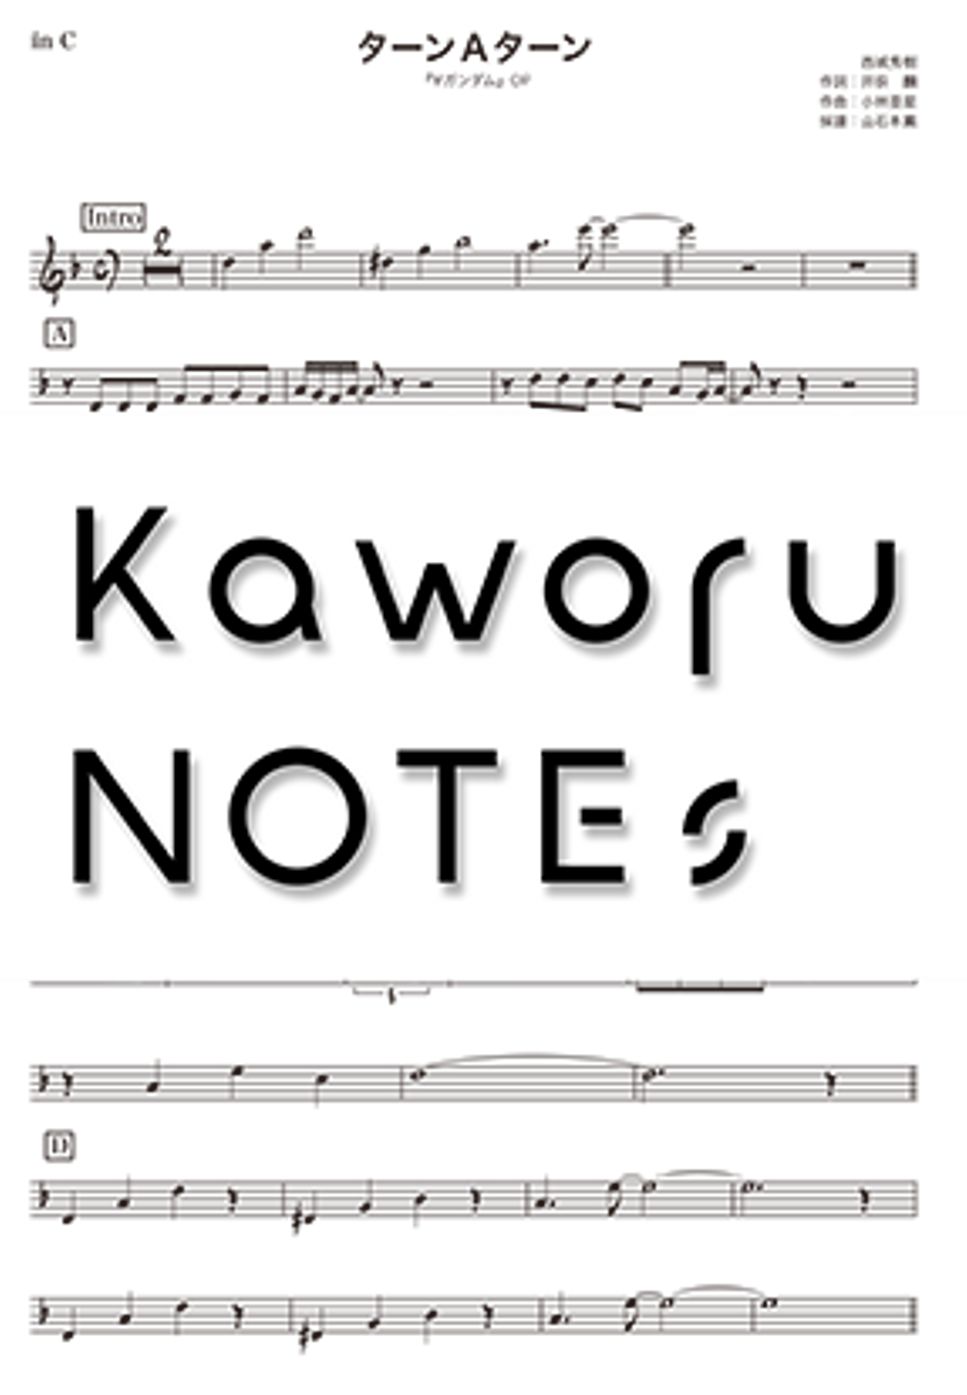 西城秀樹 - Turn Ａ Turn（降B调《机动战士高达逆A》） by Kaworu NOTEs